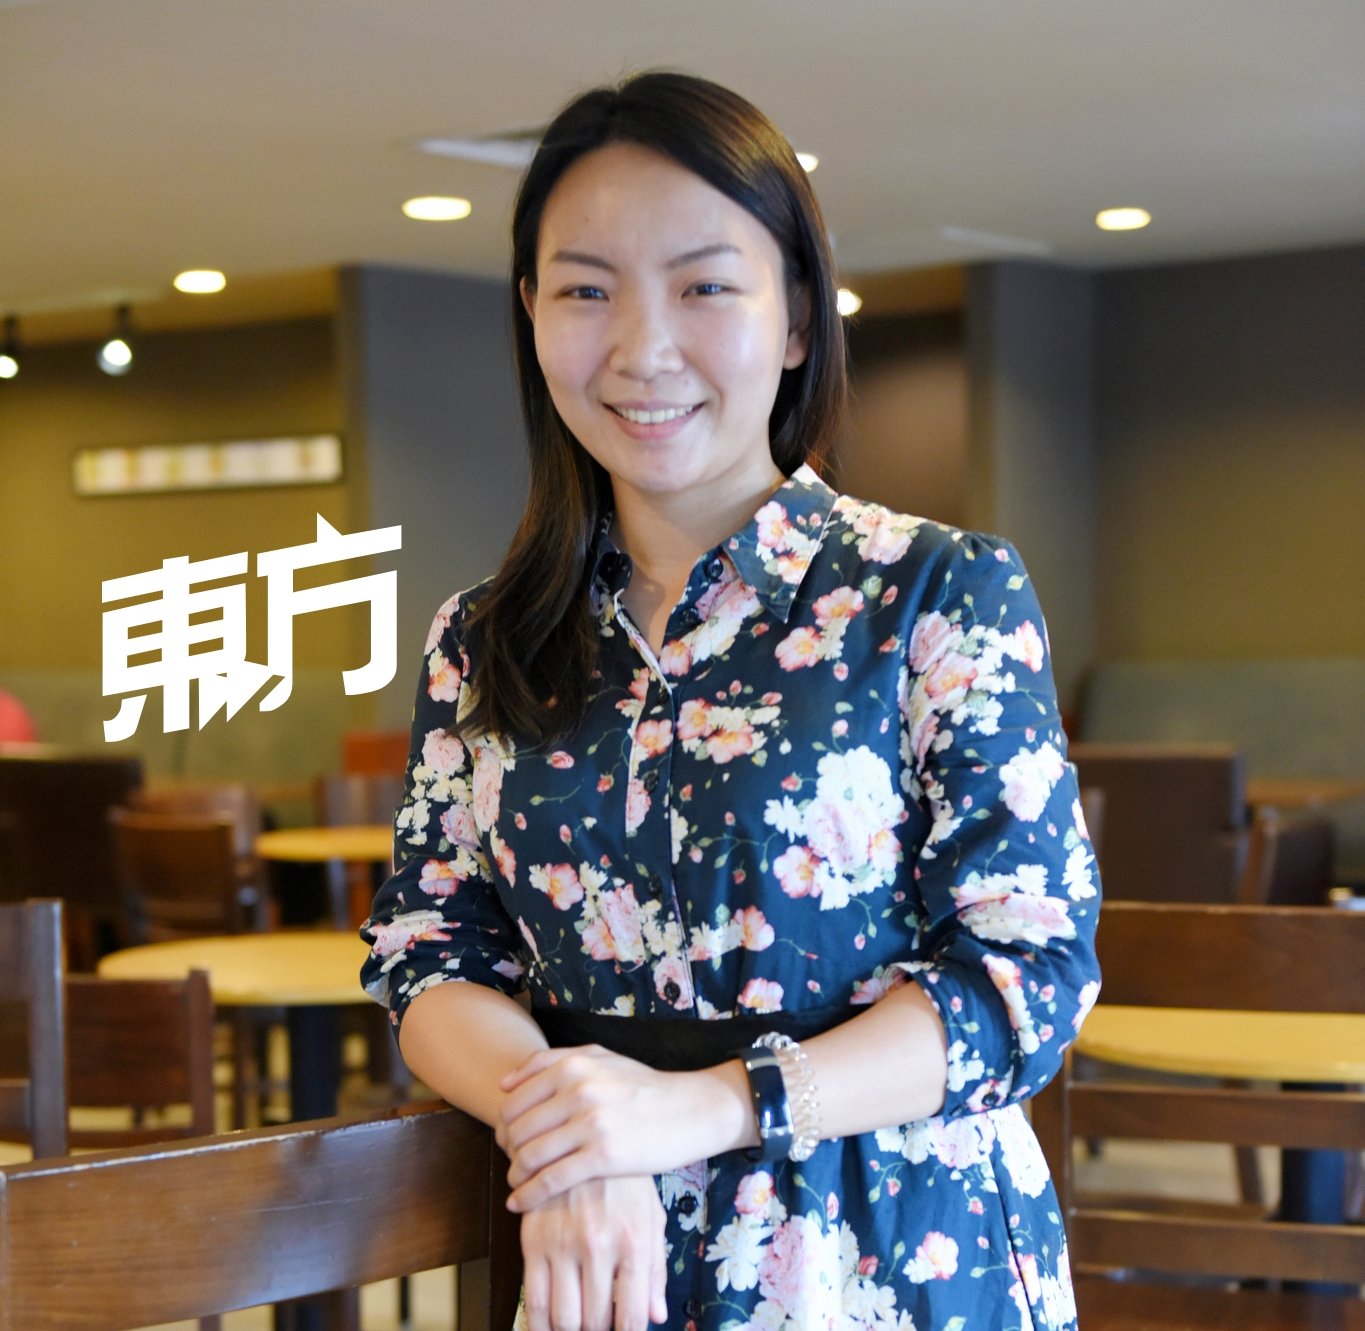 除了担任bebonobo联合创办人兼代言人，王小珈亦在一家新加坡新型创业任职市场管理。她表示，自己可以从中学习如何经营一家成功的新型创业。